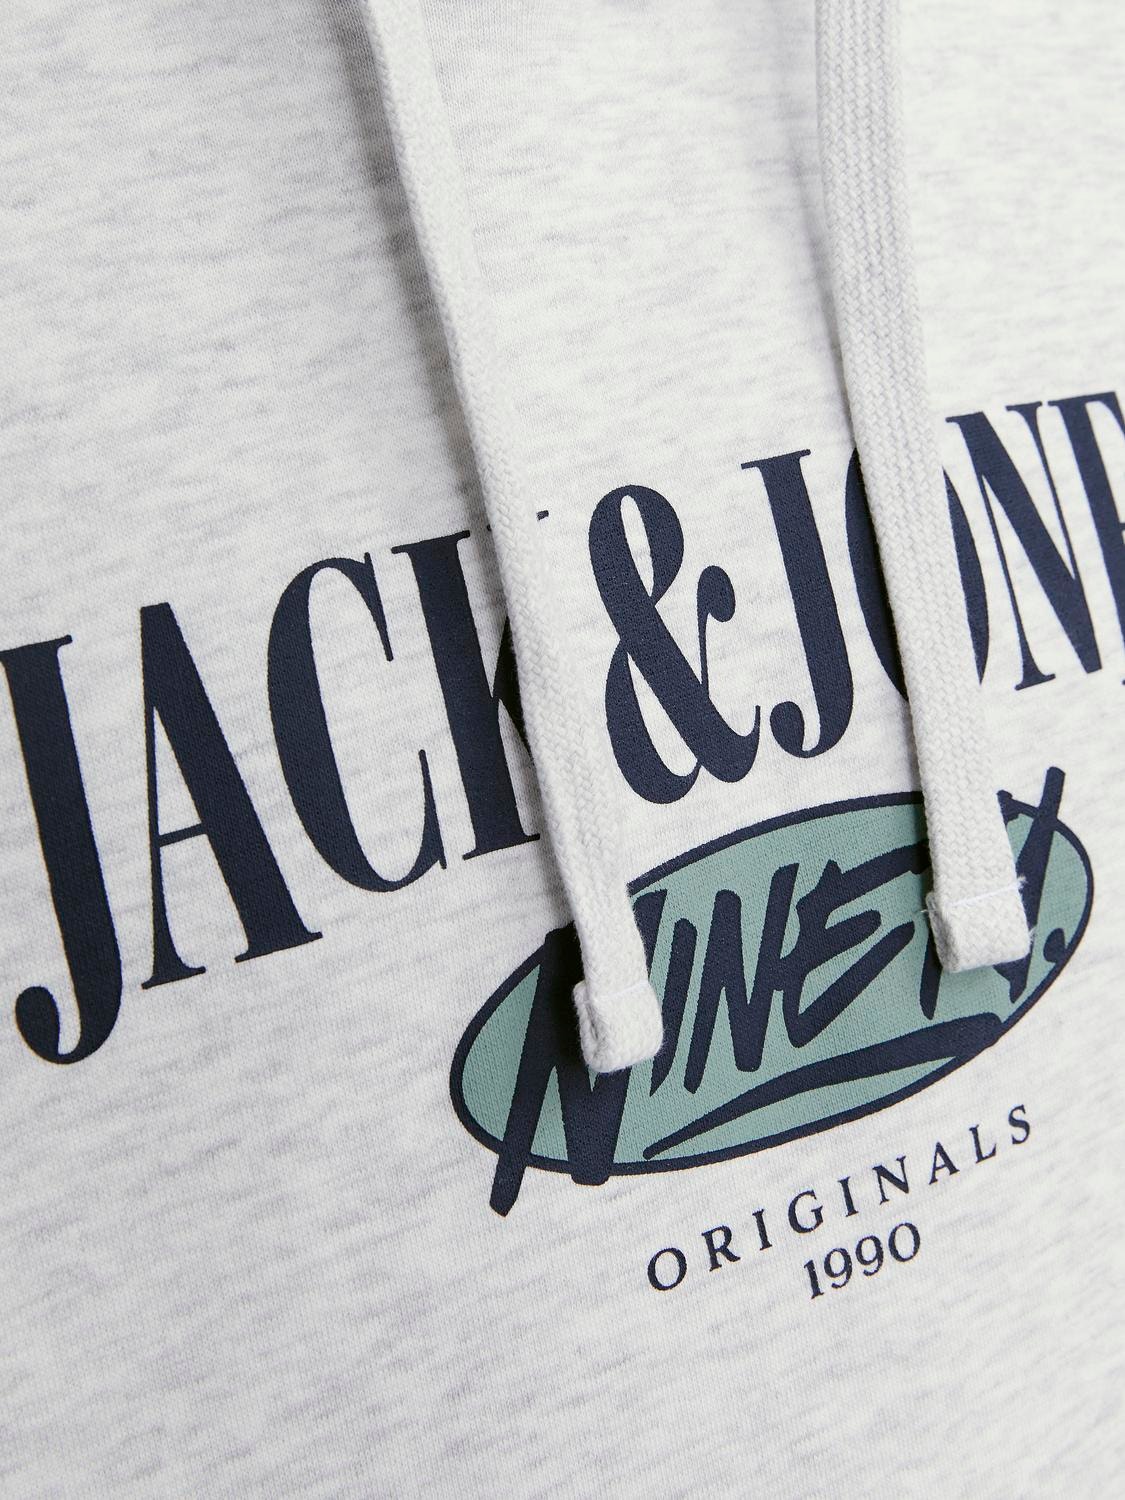 Jack & Jones Logo Hettegenser -White Melange - 12252402